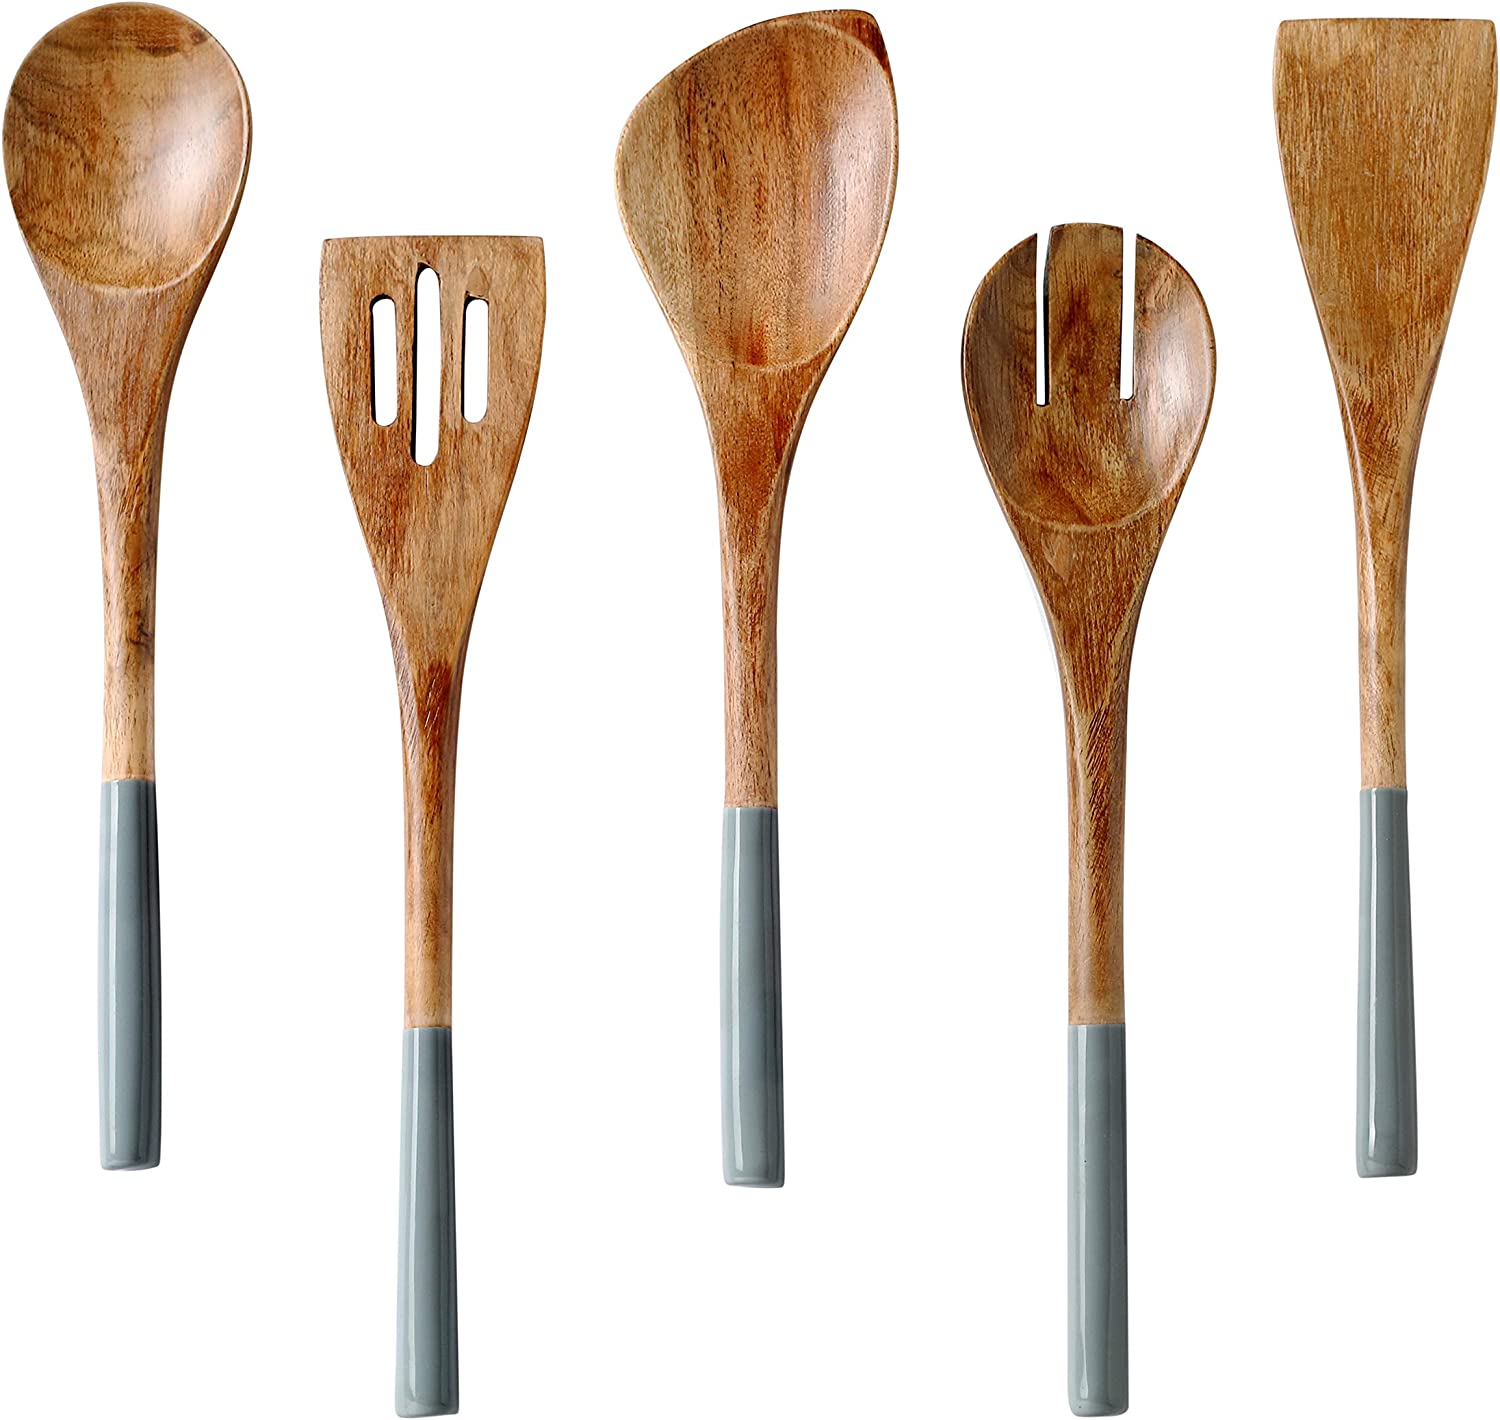 Folkulture Eco-Friendly Scratch-Free Wooden Spoon & Spoon Set, 5-Piece